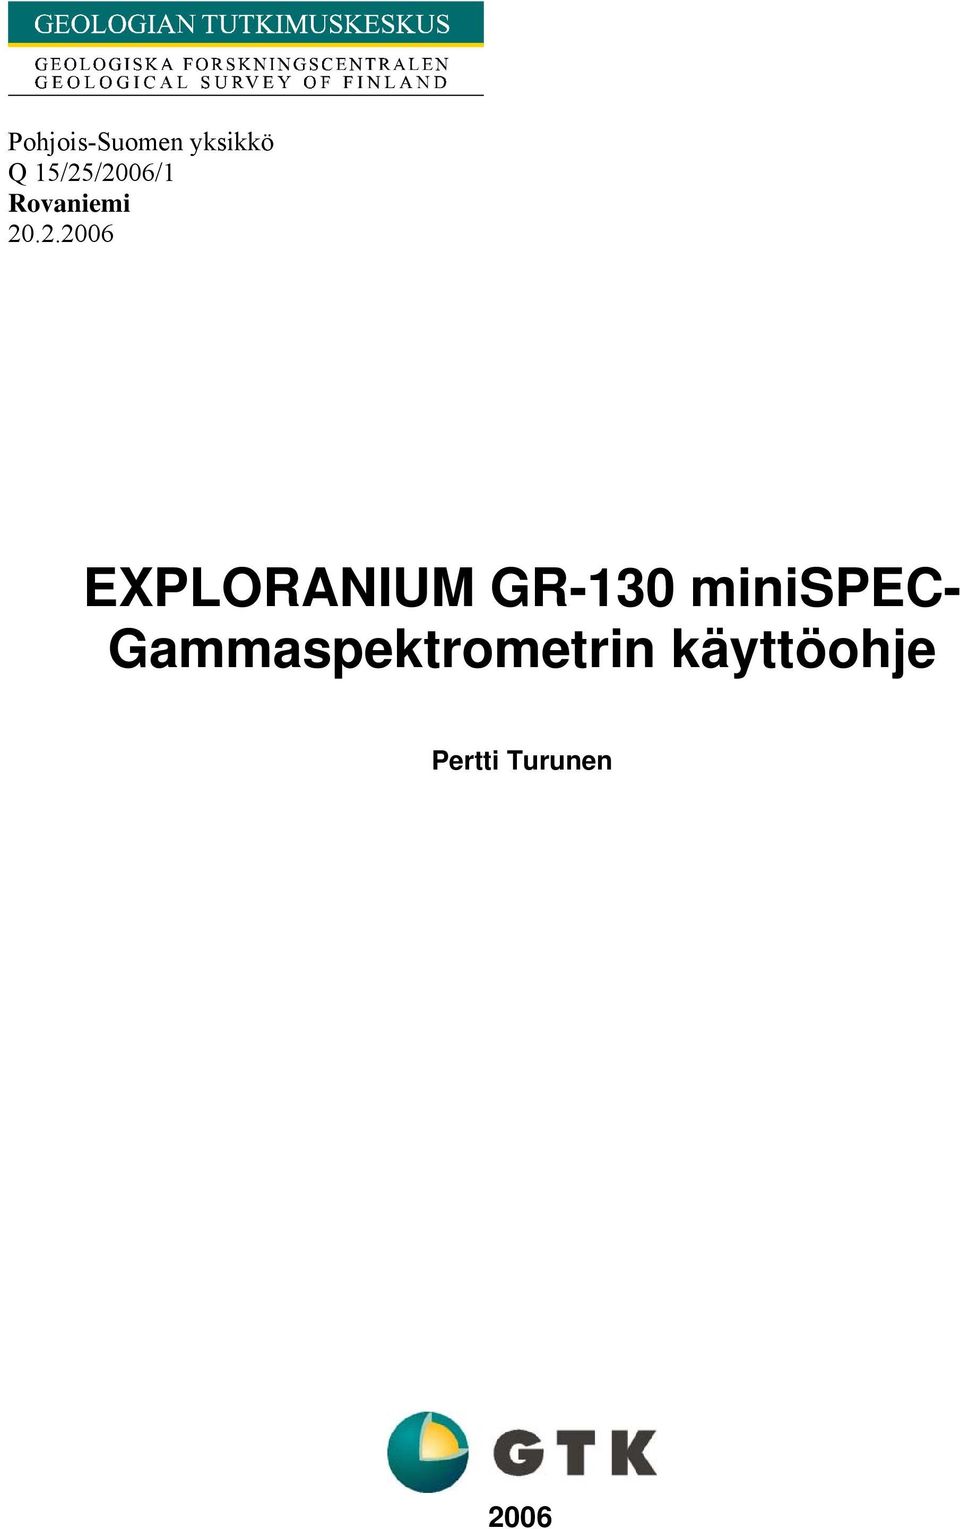 EXPLORANIUM GR-130 minispec-